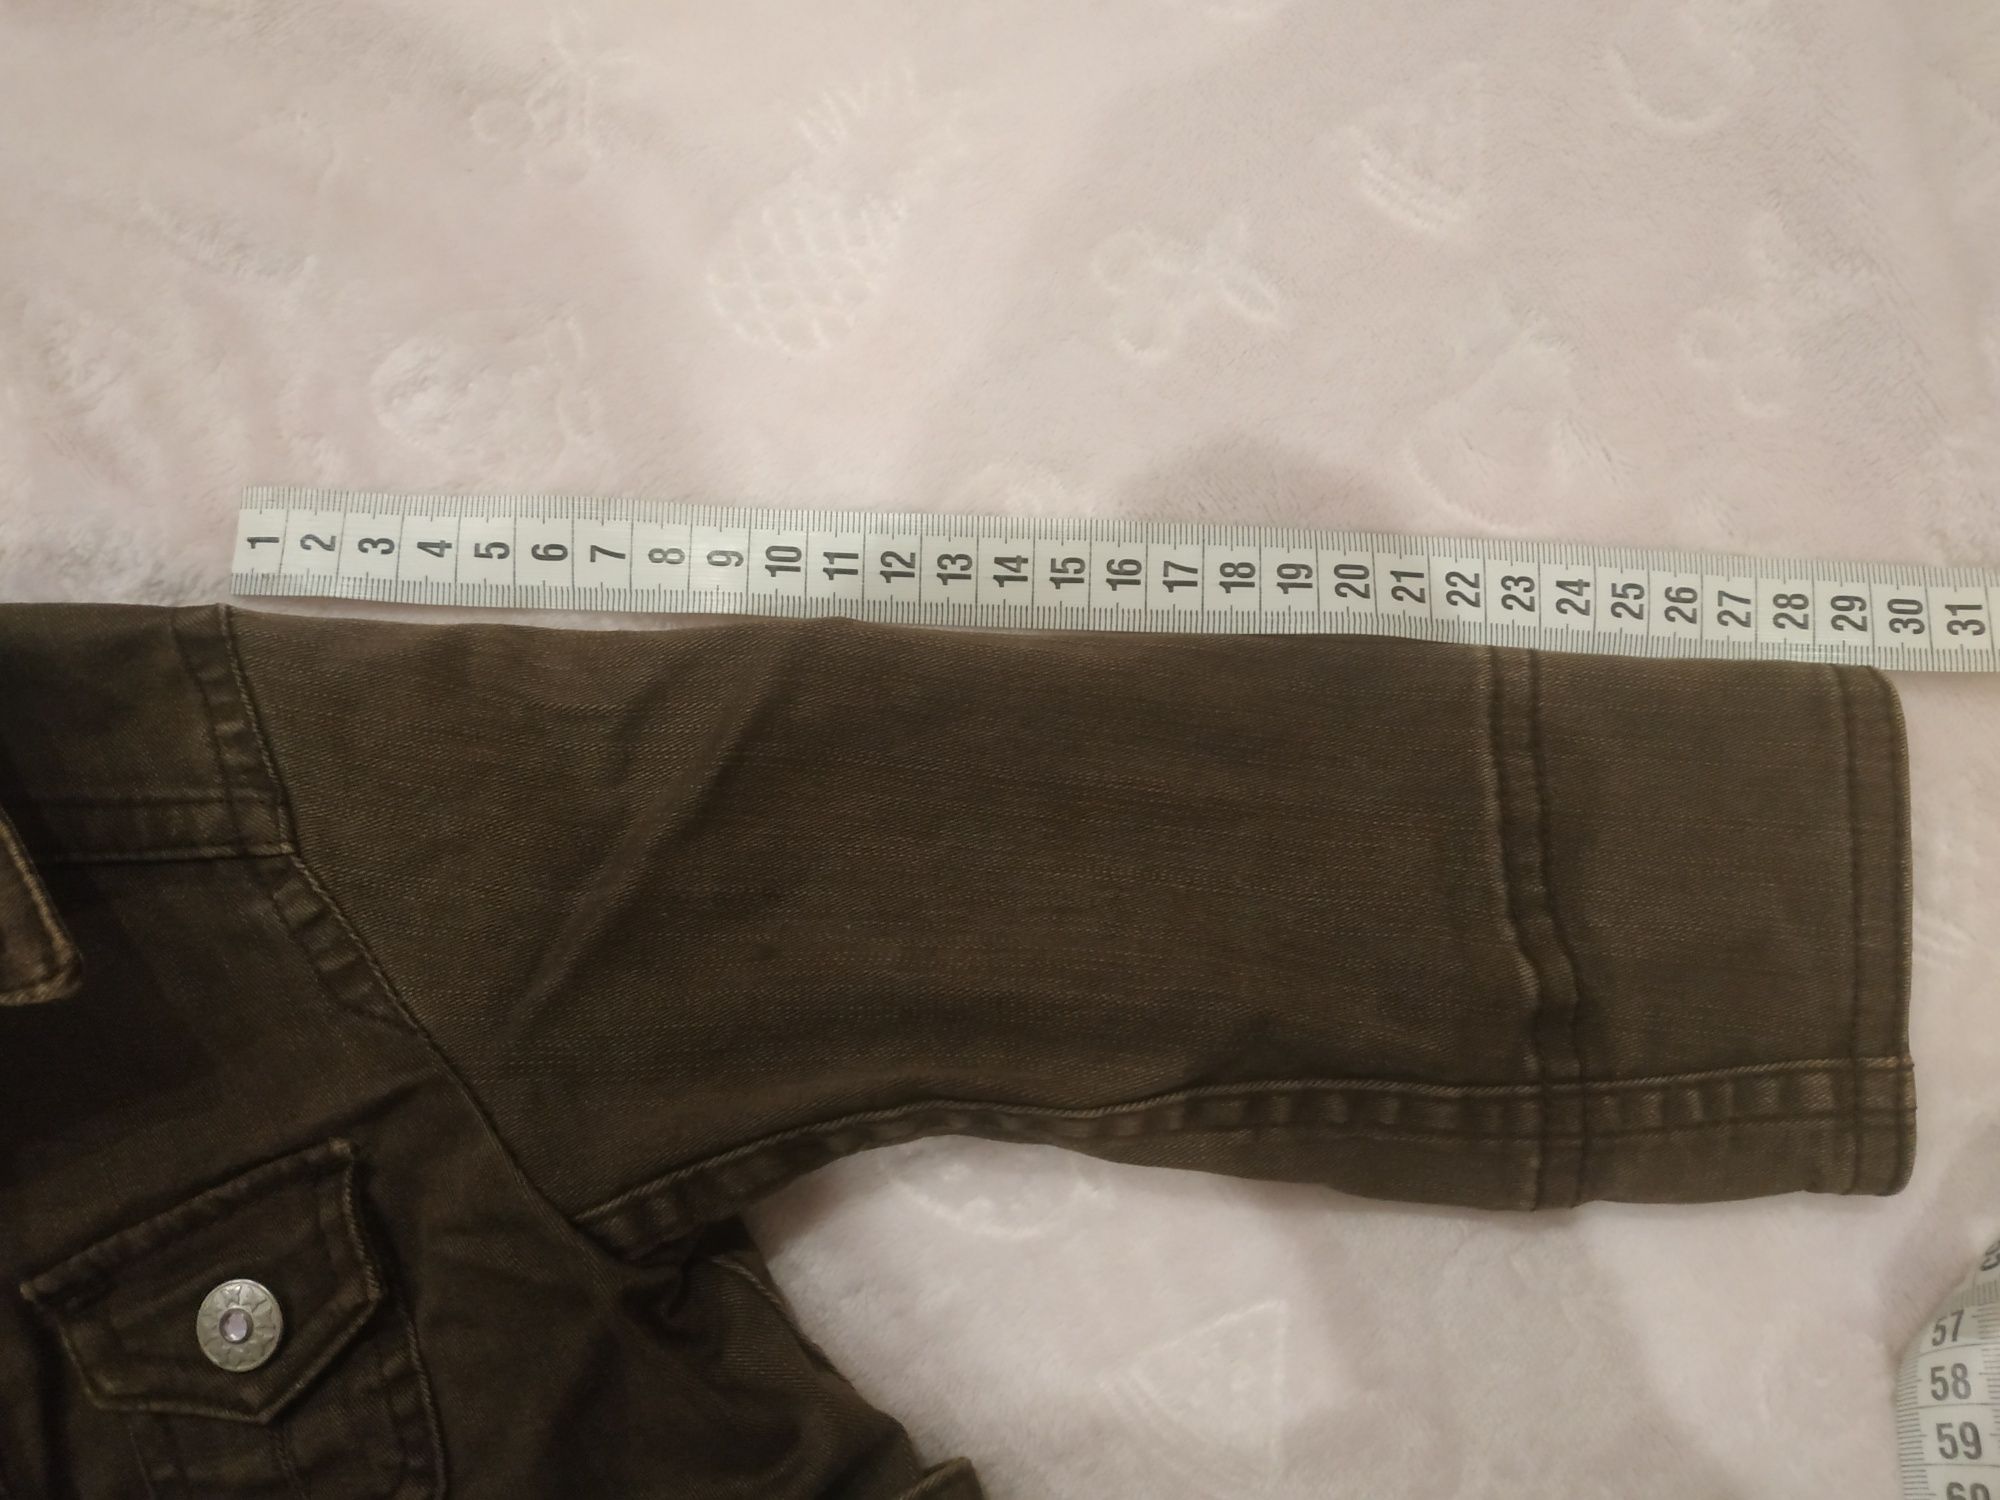 Jeansowy płaszczyk, kurteczka H&M r. 86